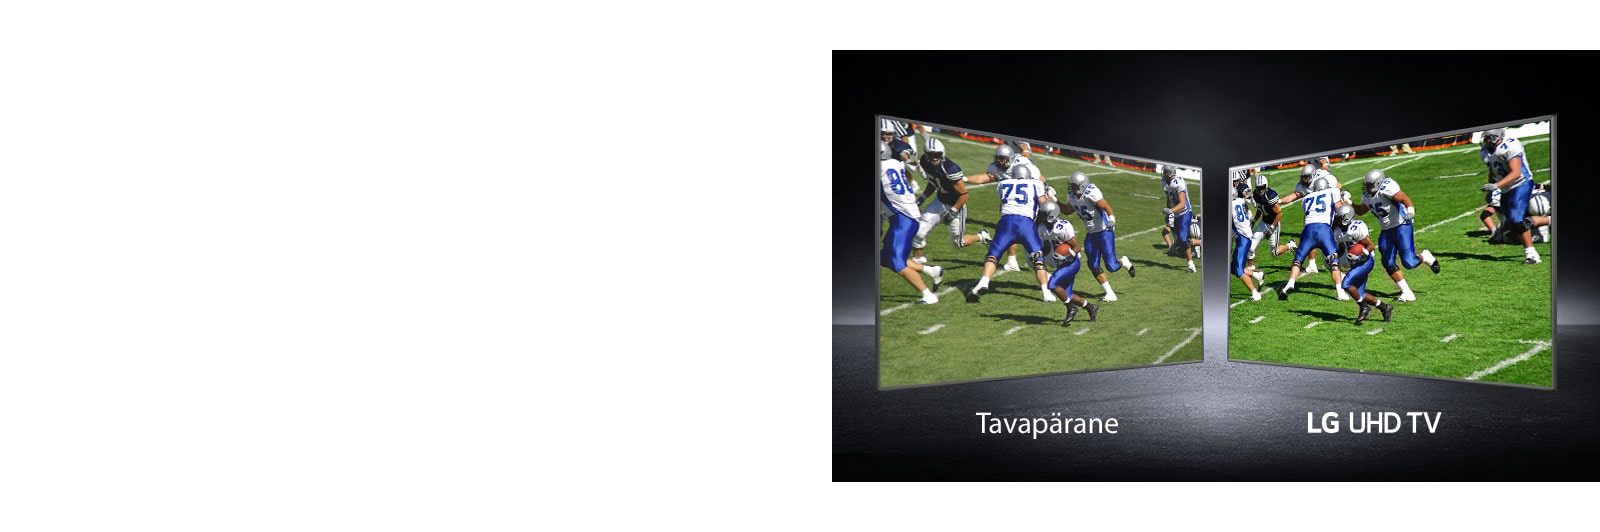 Una foto di giocatori di football che giocano sul campo da diverse angolazioni.  Un'immagine ha uno schermo standard e l'altra una TV UHD.